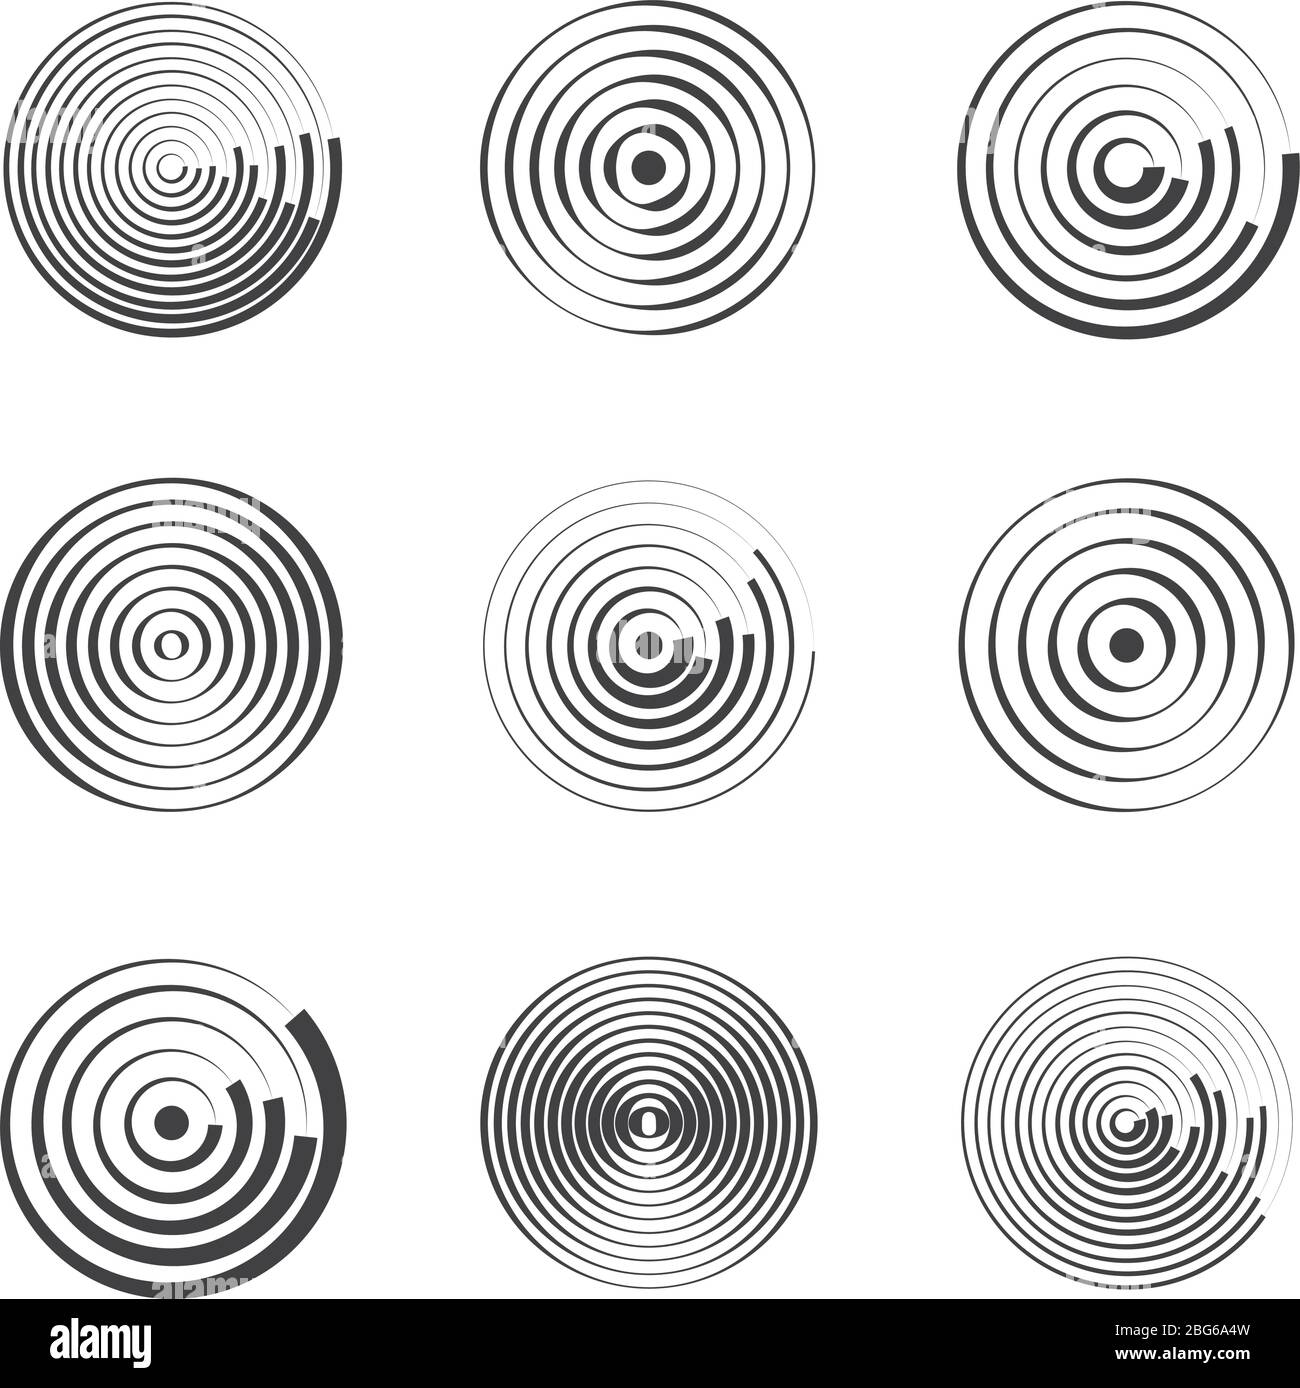 Cerchi concentrici astratti motivi vettoriali geometrici. Forme circolari e onde rotonde. Anelli con linee radiali. Schema radiale circolare, epicente dell'anello Illustrazione Vettoriale